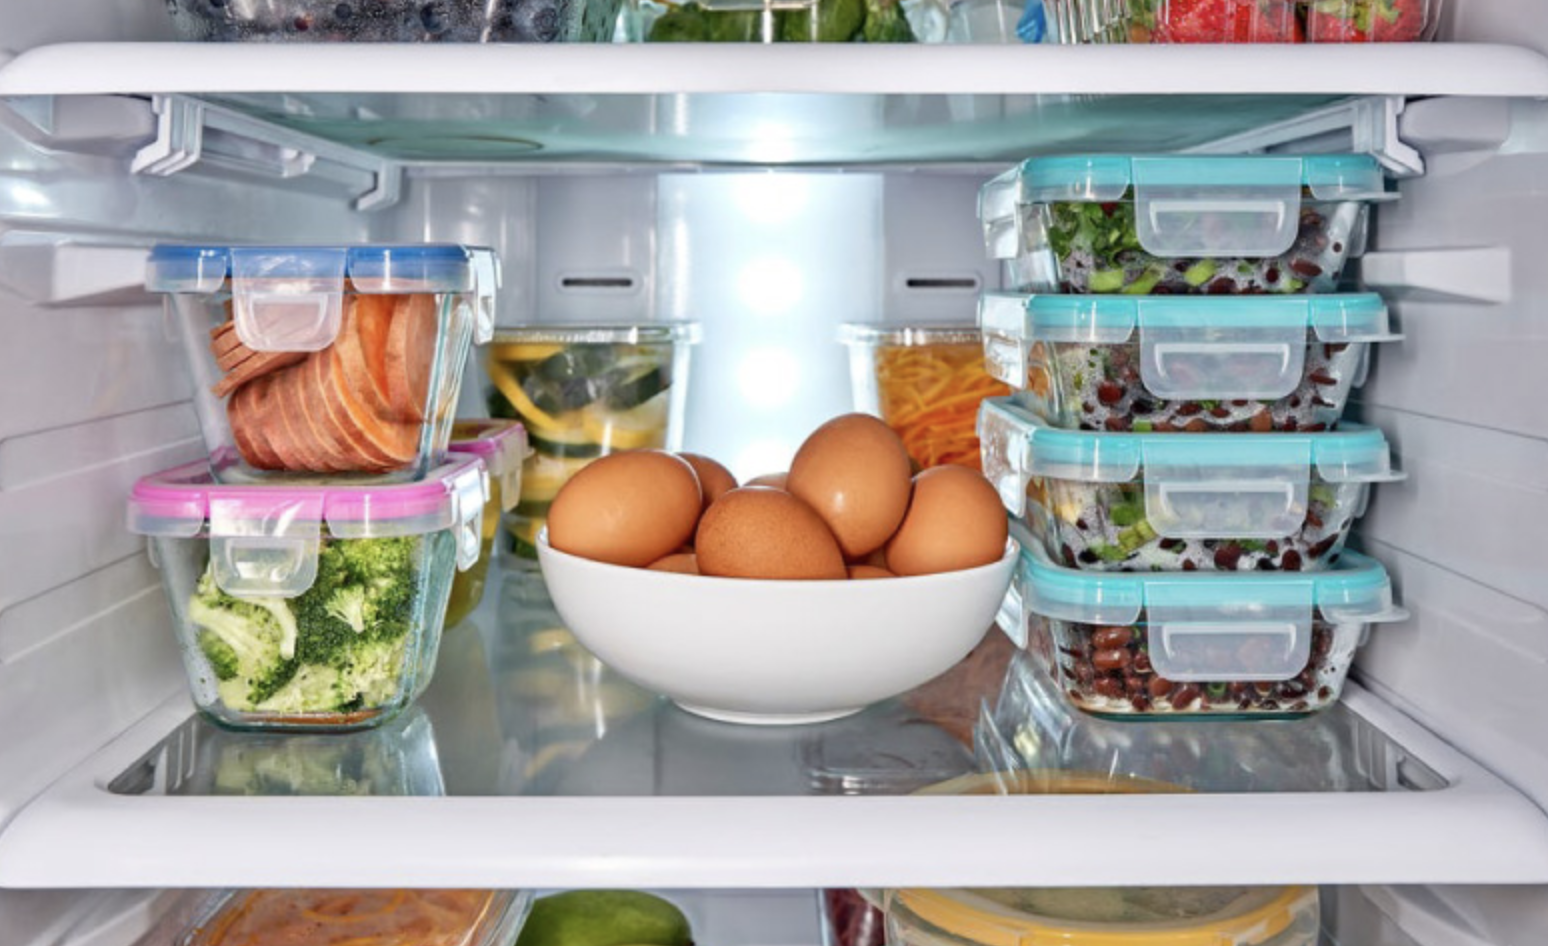 Что можно хранить в холодильнике. Хранение в холодильнике. Холодильник с продуктами. Хранение продуктов в холодильнике. Проддуктыв холодильнике.